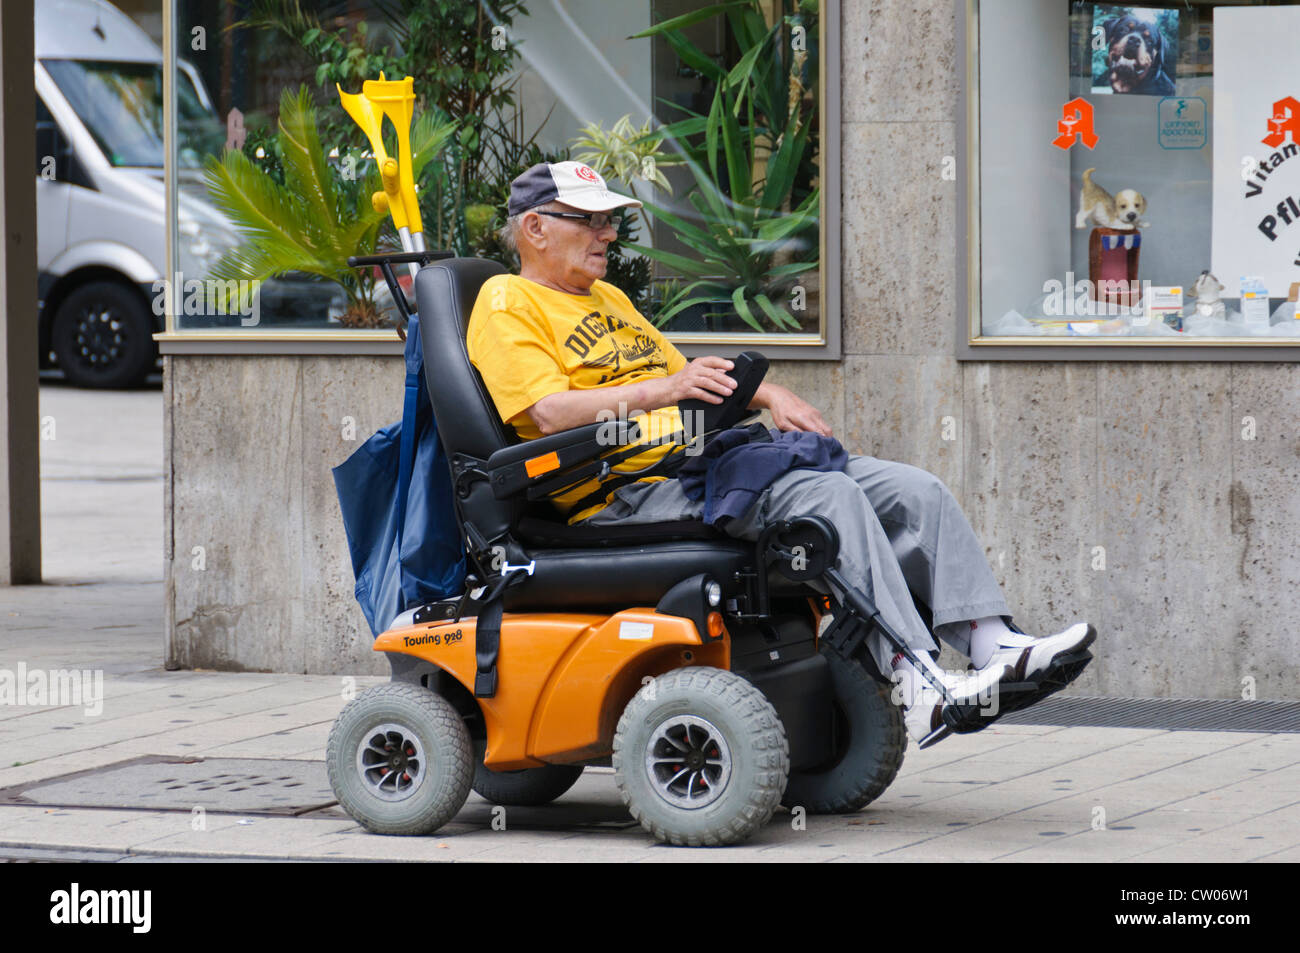 Portrait of Senior Citizen à mobilité réduite riding Scooter de mobilité électrique - Heilbronn Allemagne Banque D'Images